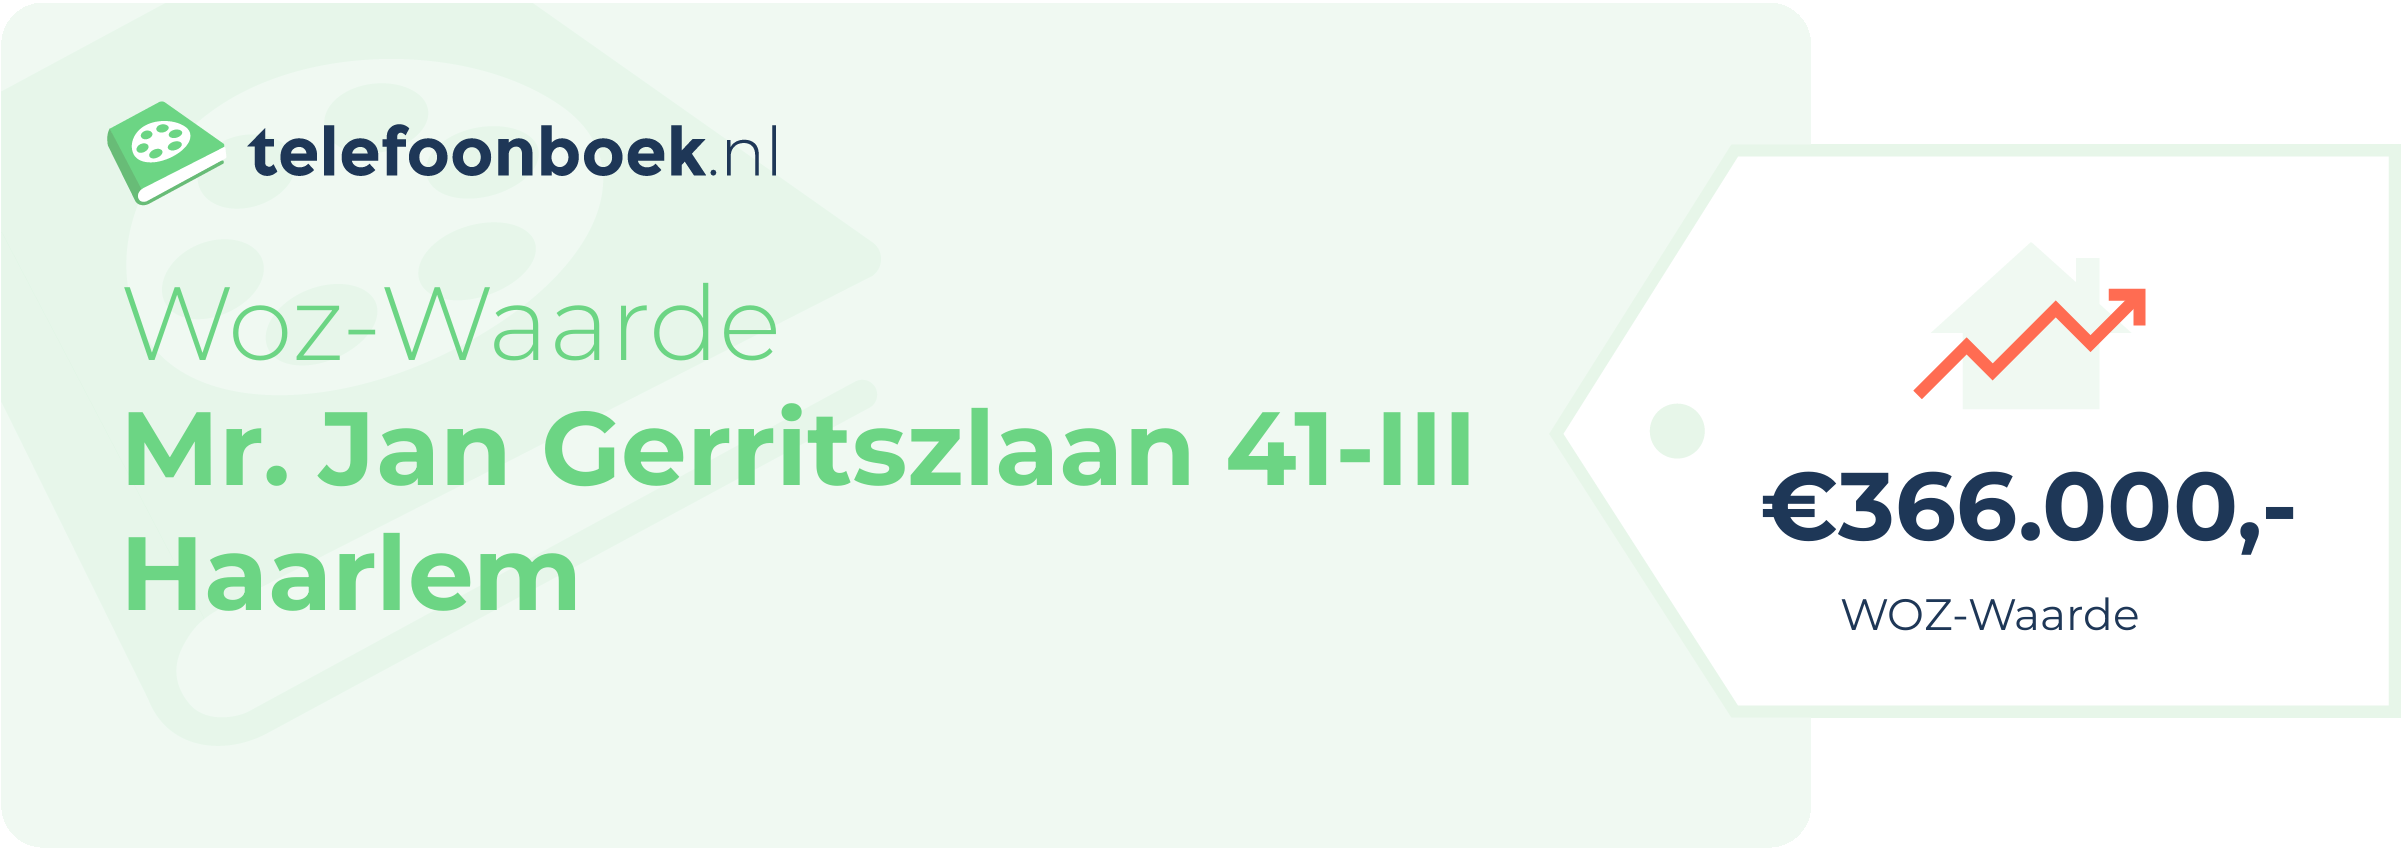 WOZ-waarde Mr. Jan Gerritszlaan 41-III Haarlem